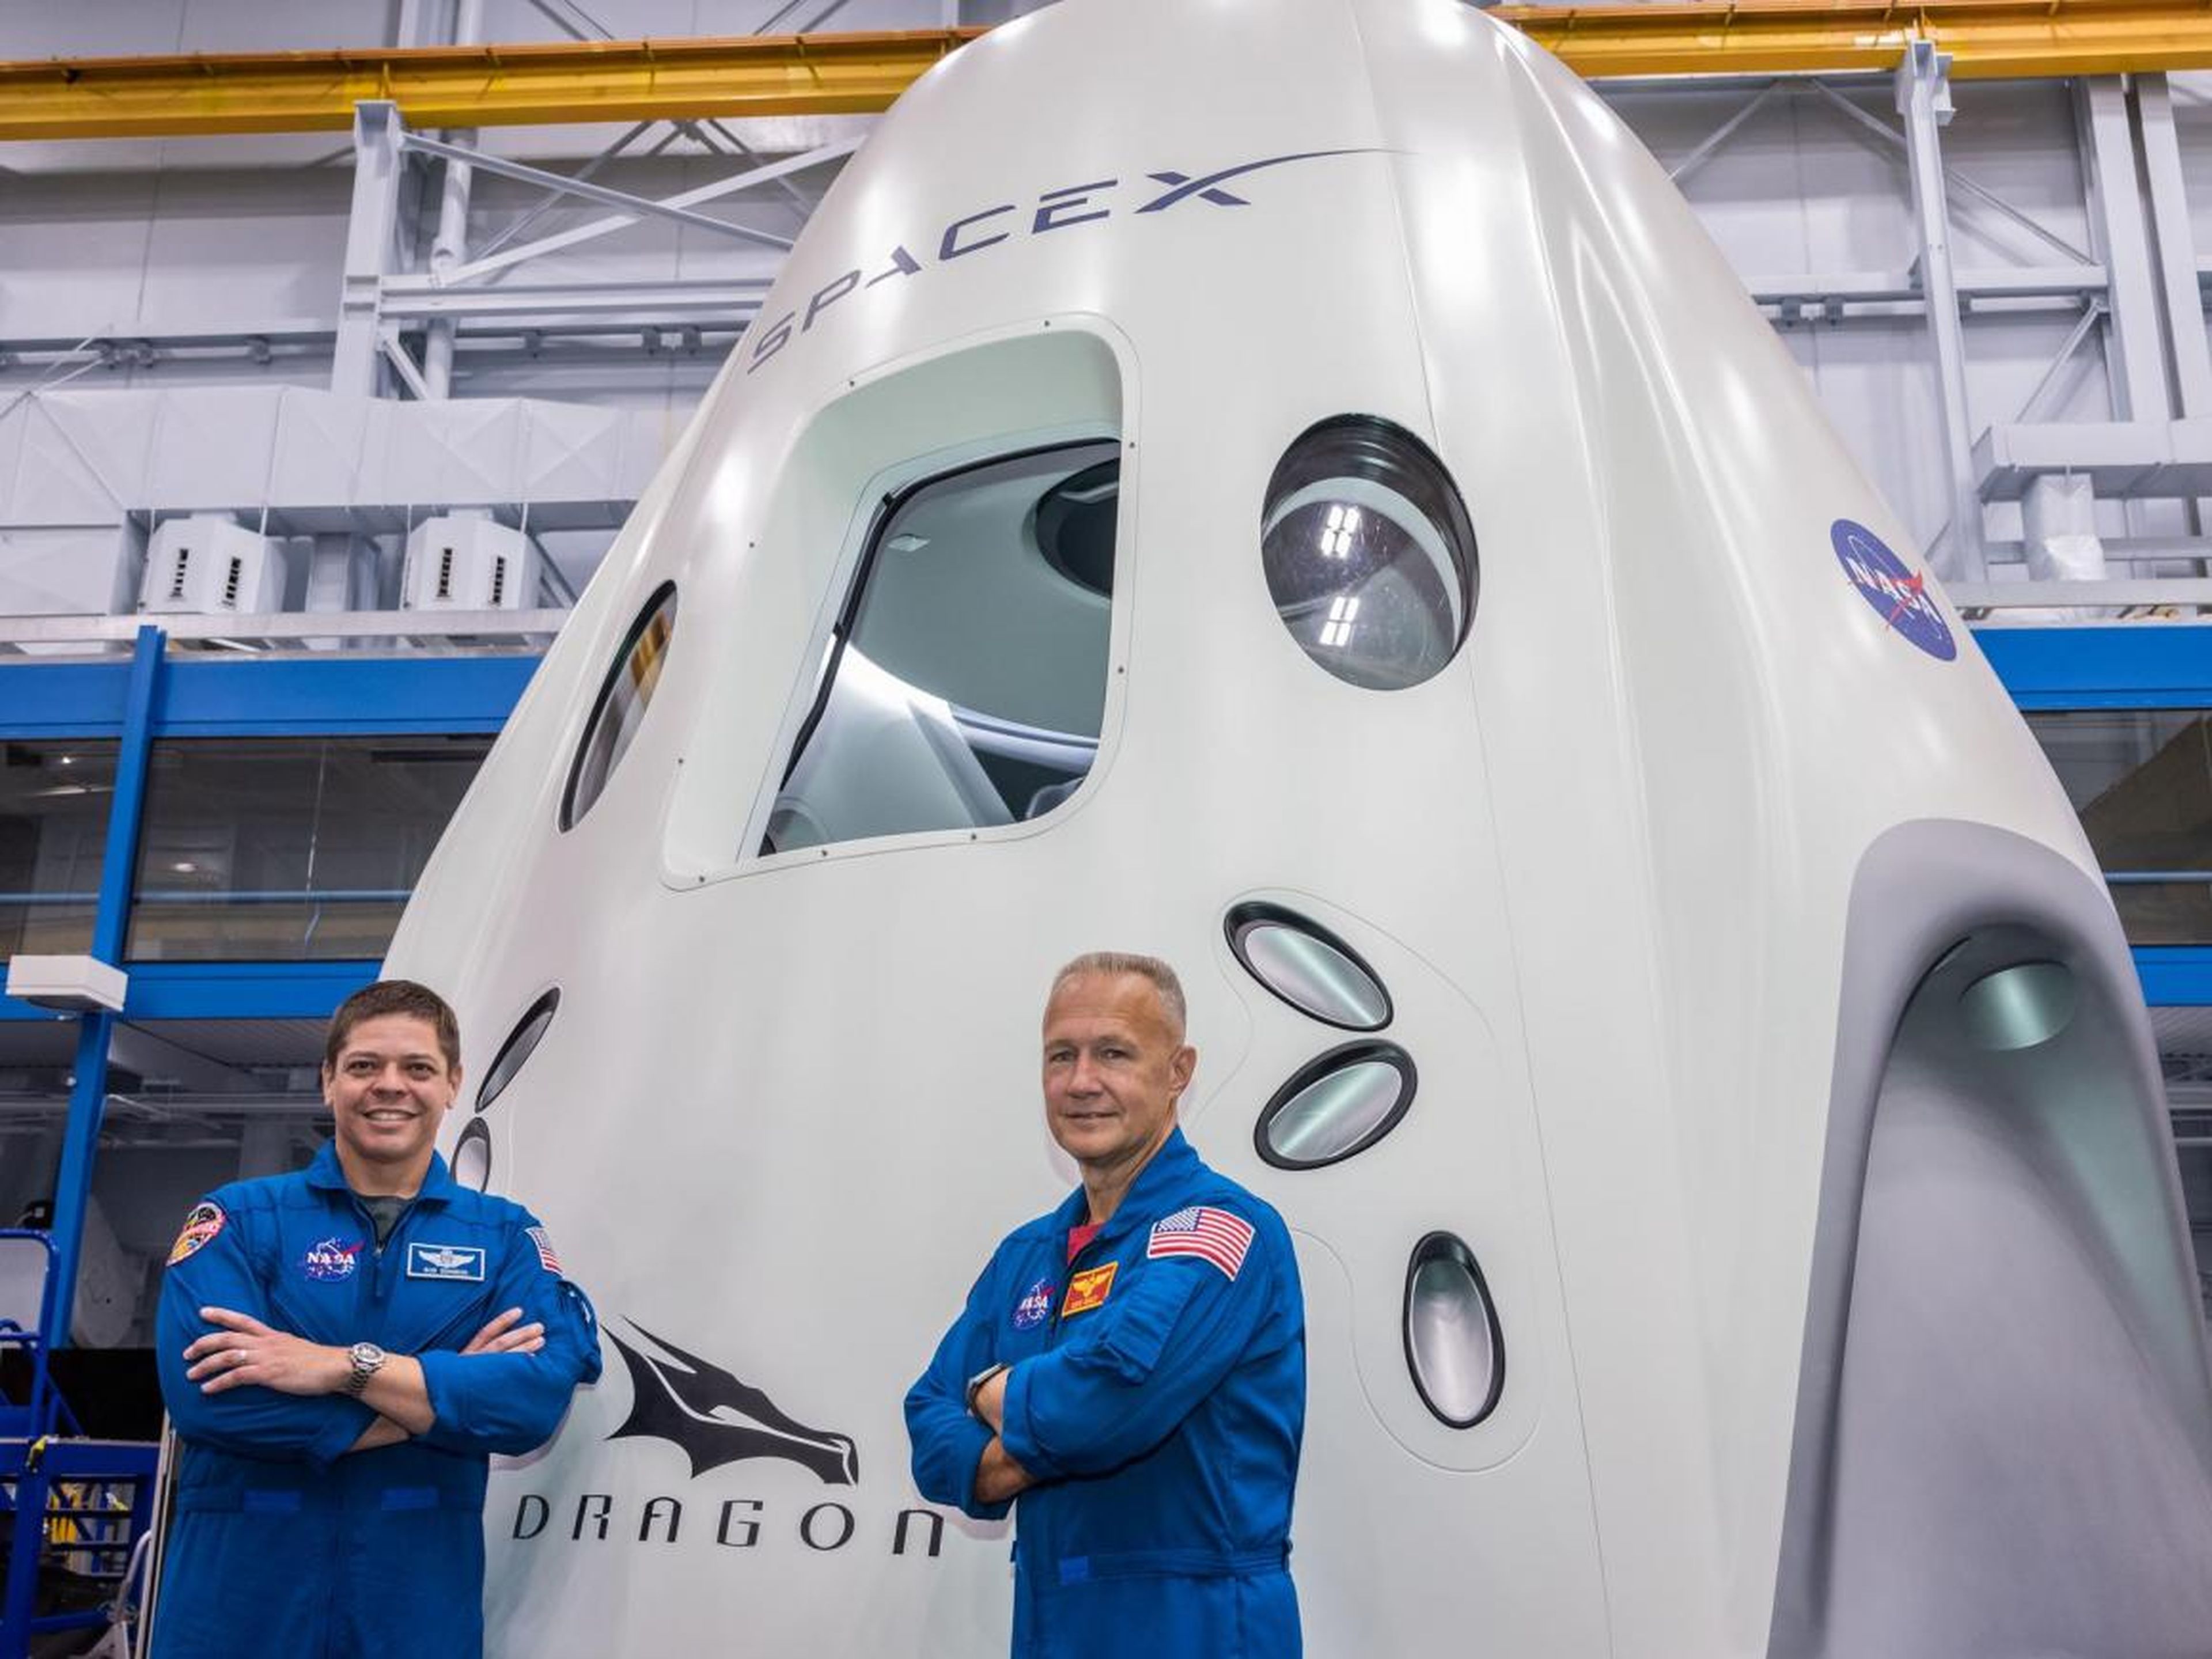 Behnken (izquierda) y Hurley (derecha) posando frente a la maqueta de la nave Dragon de SpaceX en el Centro Espacial Johnson de la NASA.